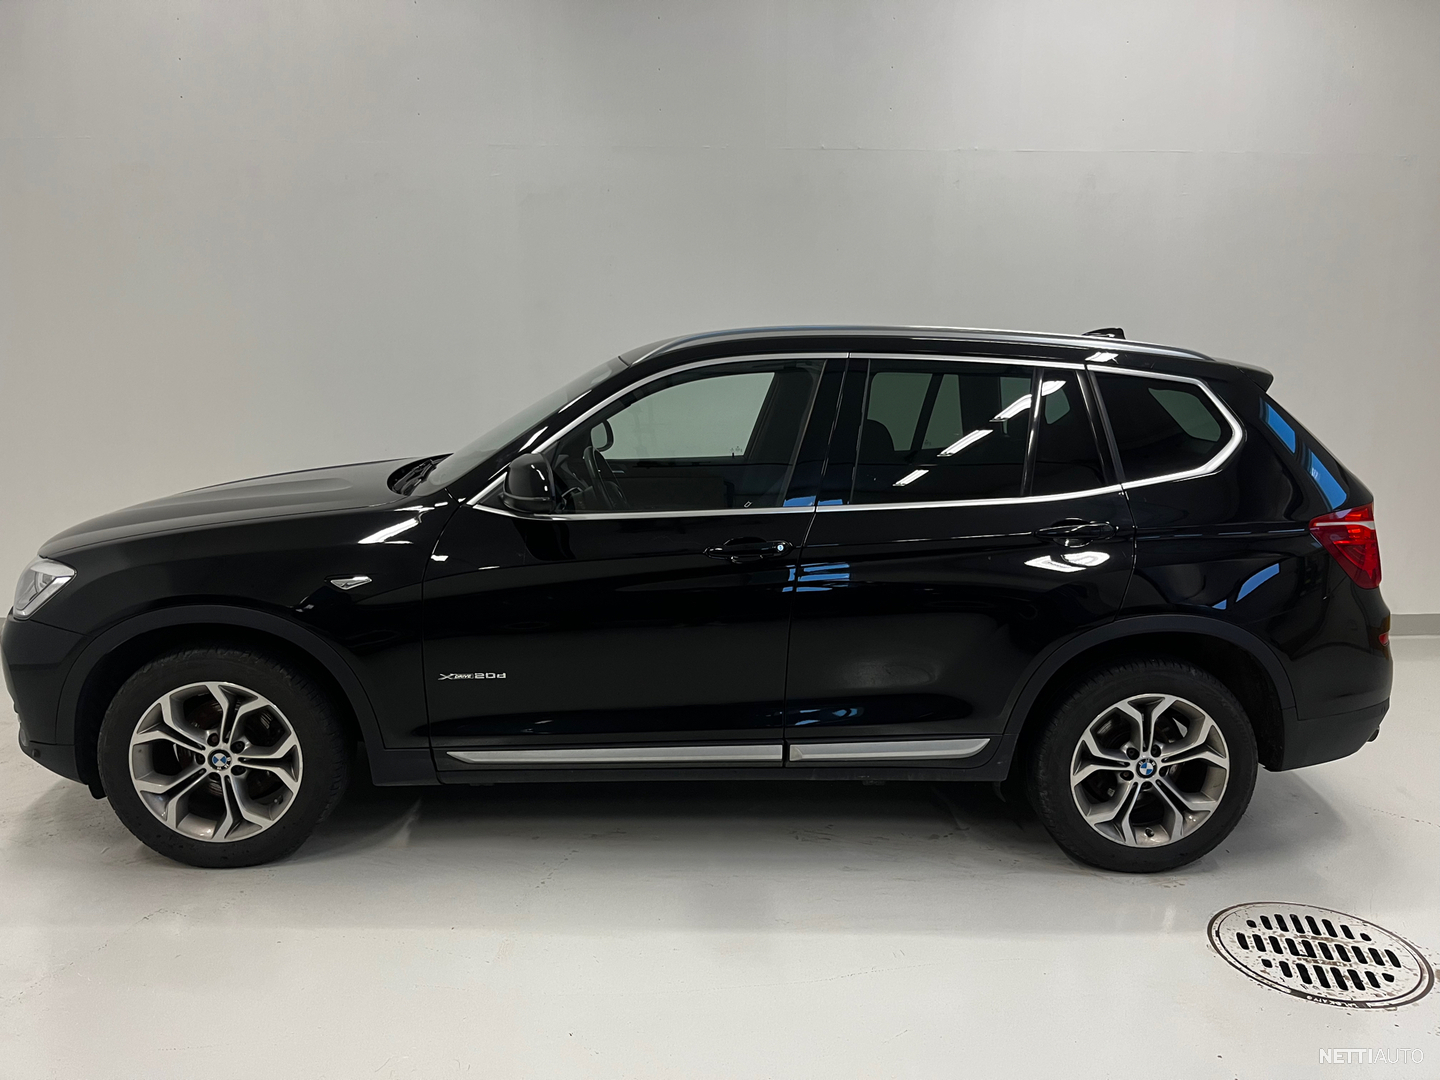 BMW X3 F25 xDrive20d A Business - *2,99% + kulut korkotarjous / Webasto /  Koukku / Lämpöratti / Nahkaverhoilu / Sähköpenkit * All-terrain SUV 2014 -  Used vehicle - Nettiauto